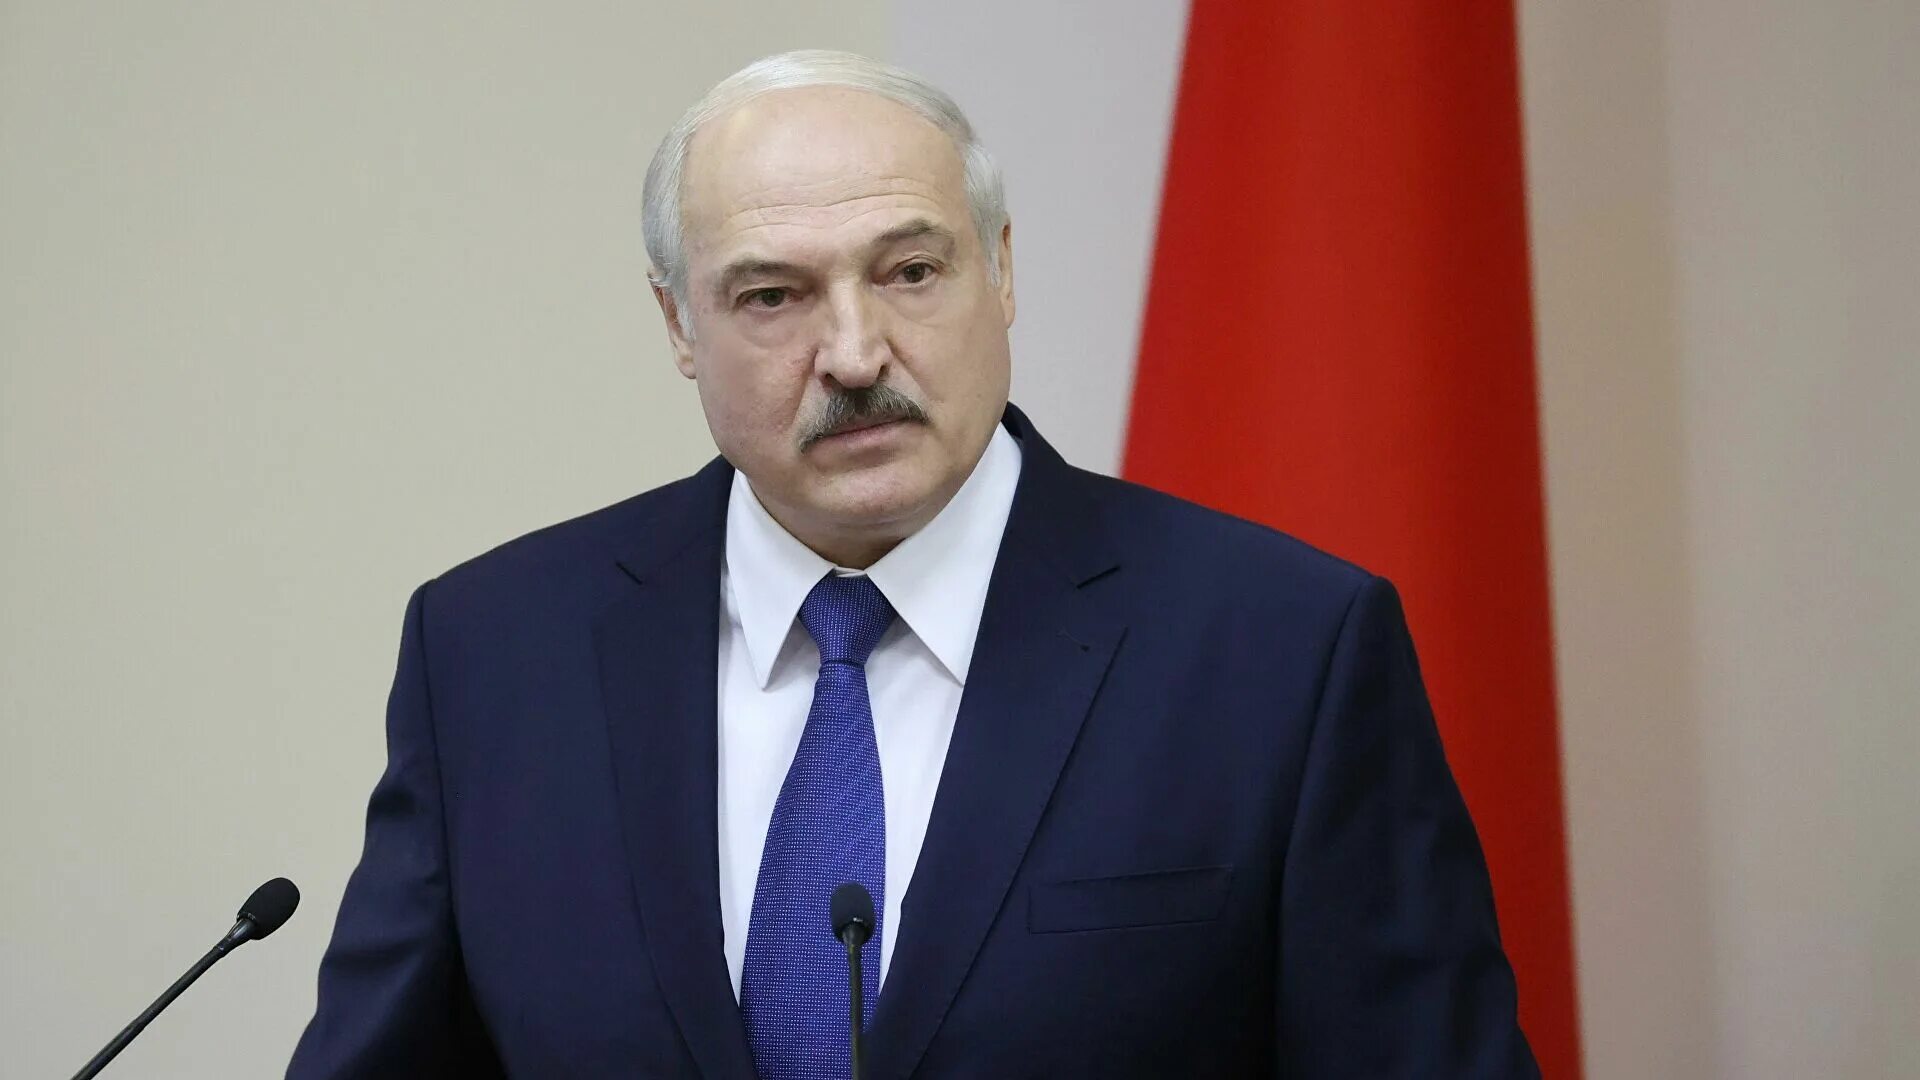 Лукашенко сколько лет у власти в качестве